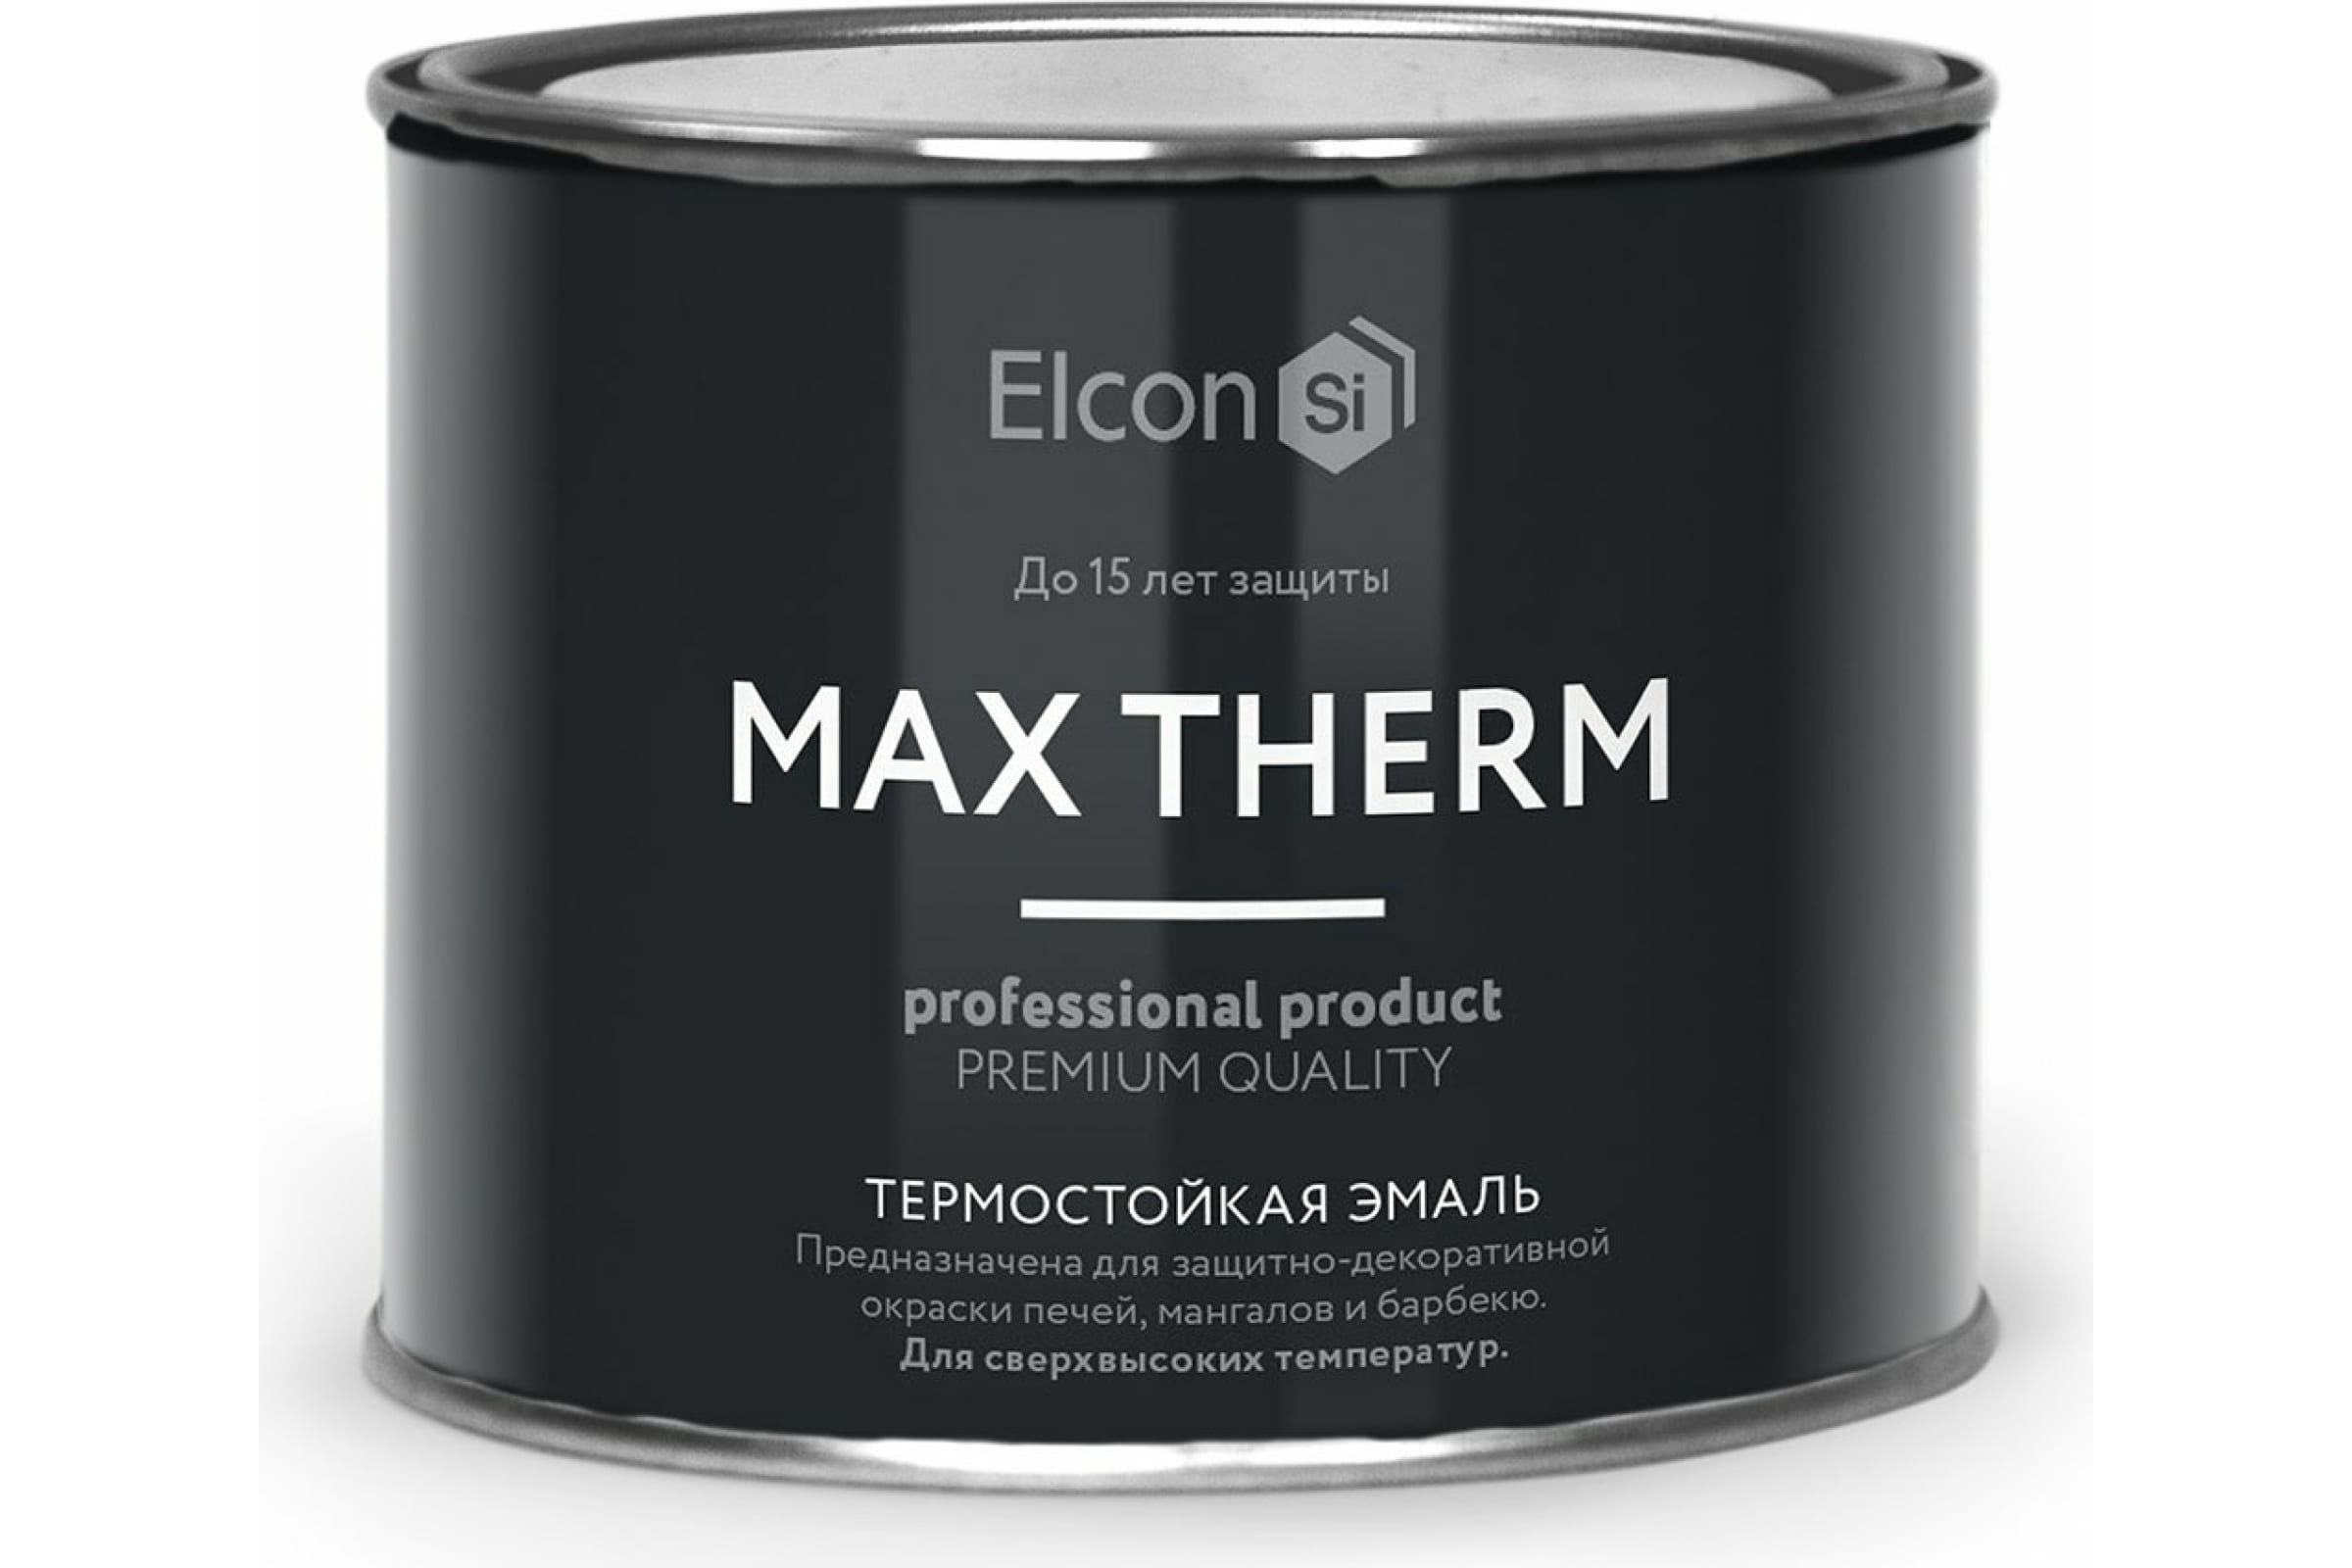 Термостойкая антикоррозионная эмаль Elcon Max Therm до 400 градусов, 0,4 л, ярко-красная термостойкая антикоррозионная эмаль elcon max therm до 400 градусов 0 4 л синяя